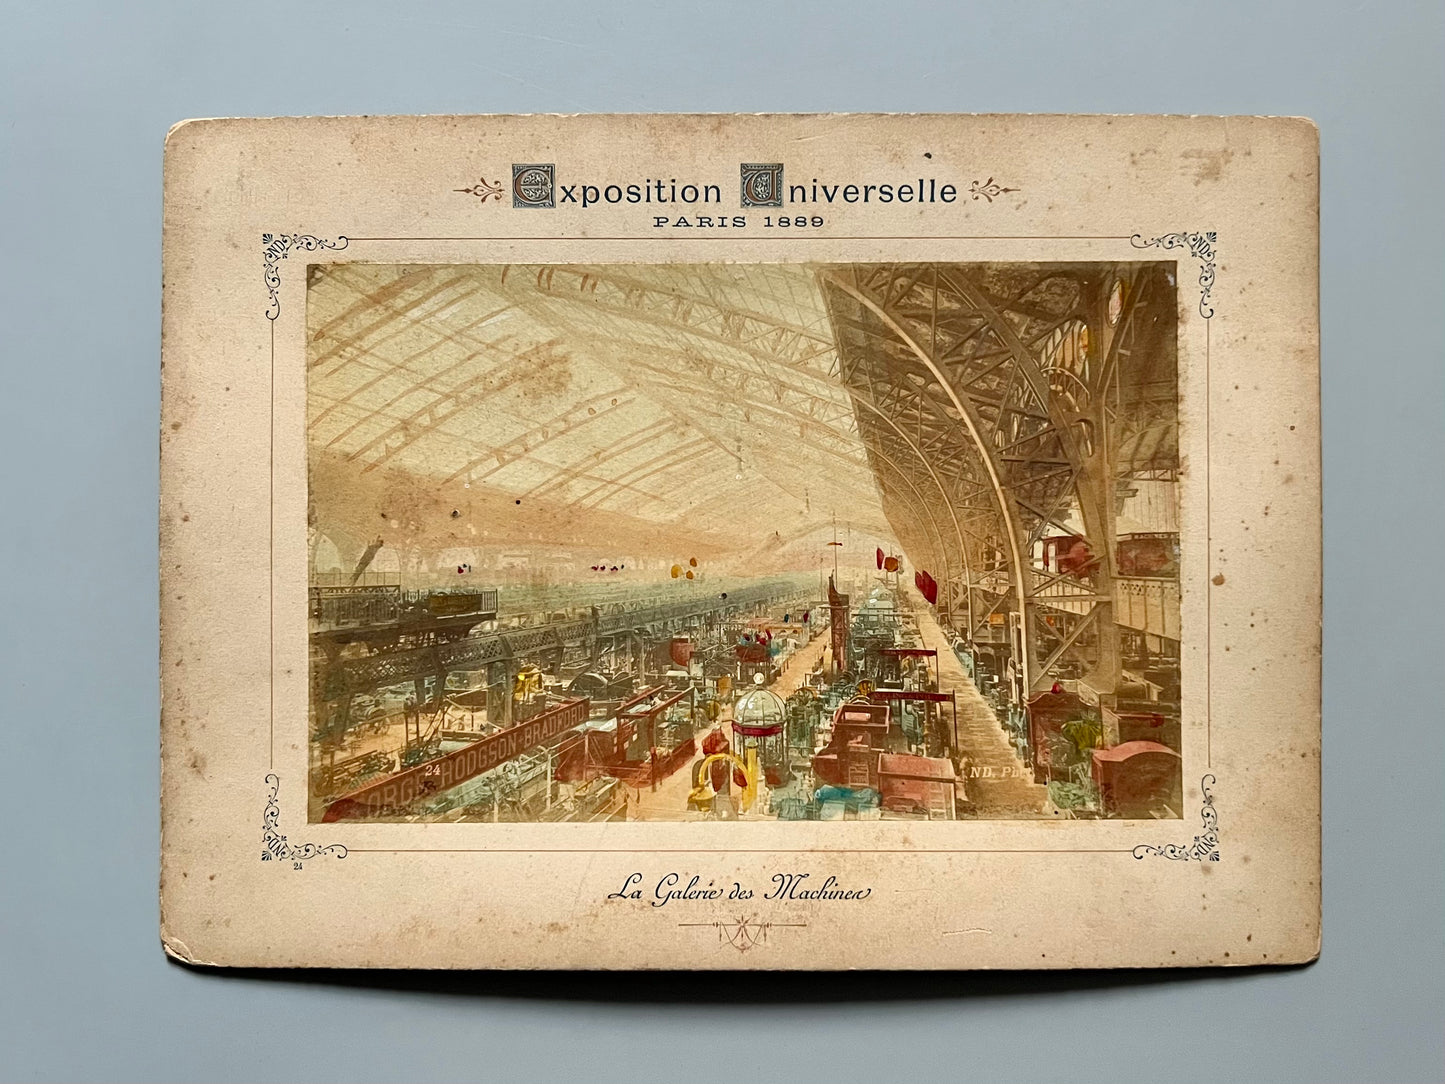 Albúmina de la Exposición Universal de París de 1889 - "La Galerie des Machines"